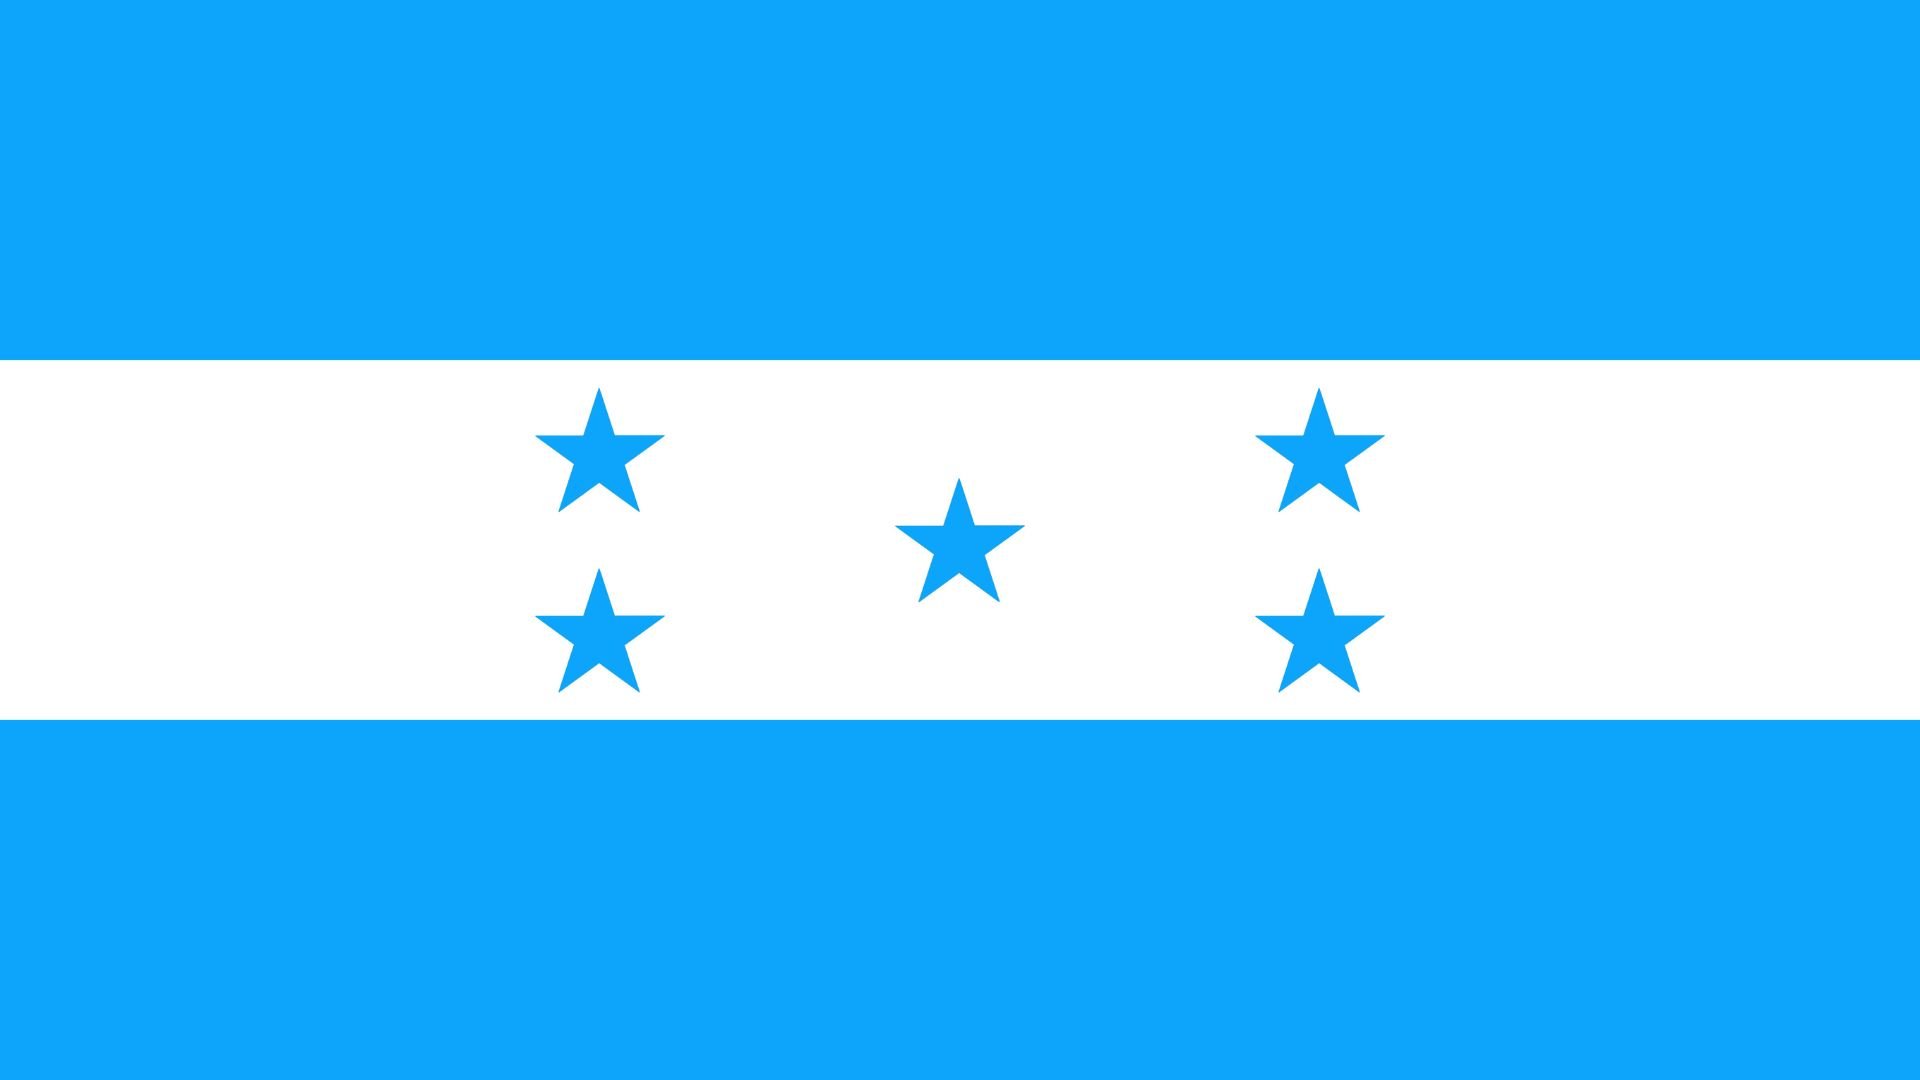 A Bandeira de Honduras consiste em três faixas horizontais iguais na seguinte ordem, de cima para baixo: turquesa, branco e turquesa. Ao centro, sobre a cor branca, há cinco estrelas turquesas.